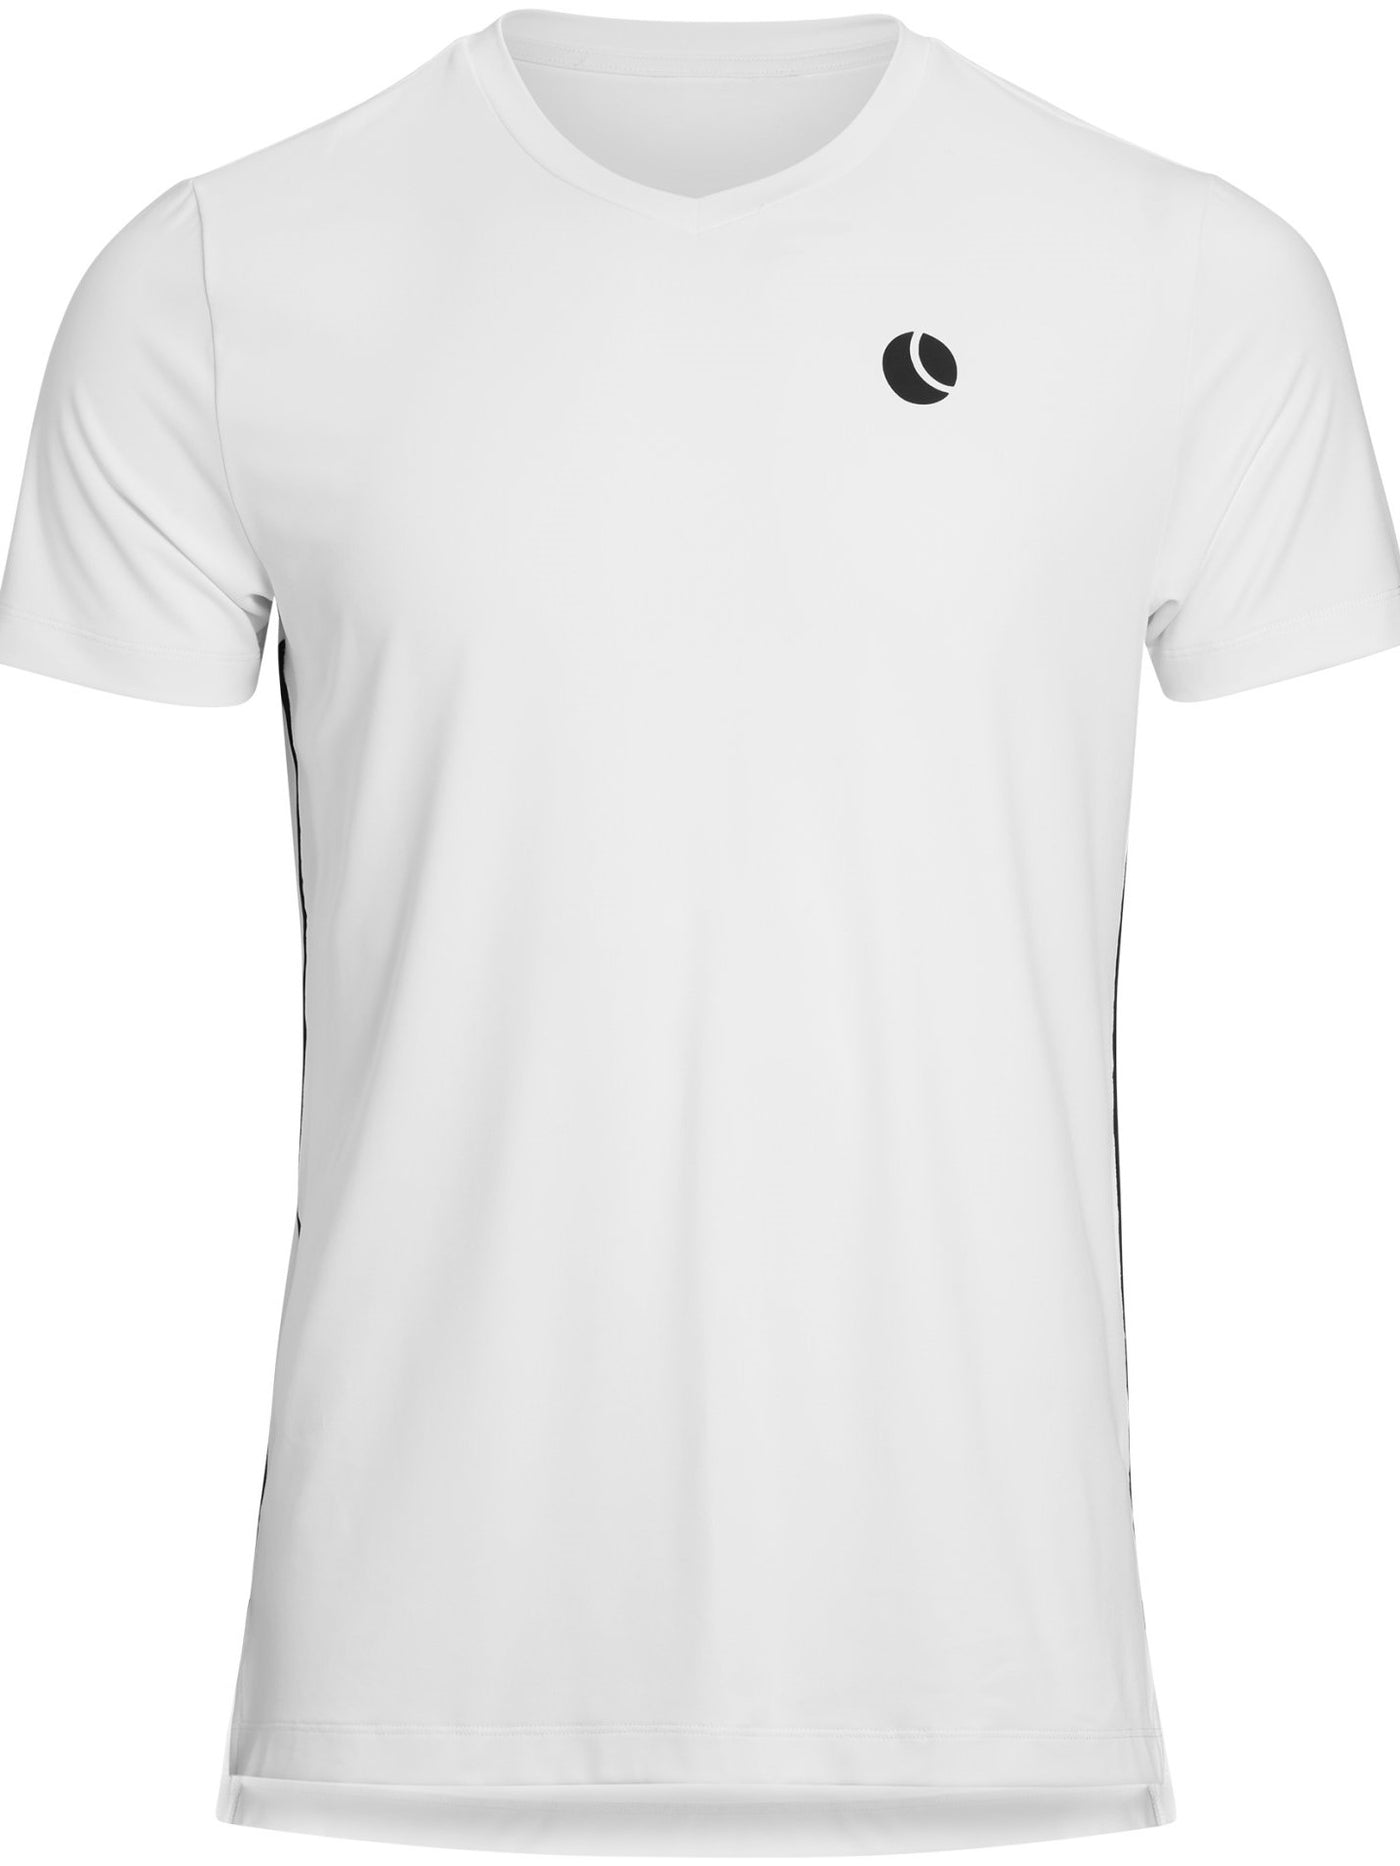 BJORN BORG Toren Gym Tee Men's Short Sleeve Top V-Neck T-Shirt White - Activemen Clothing